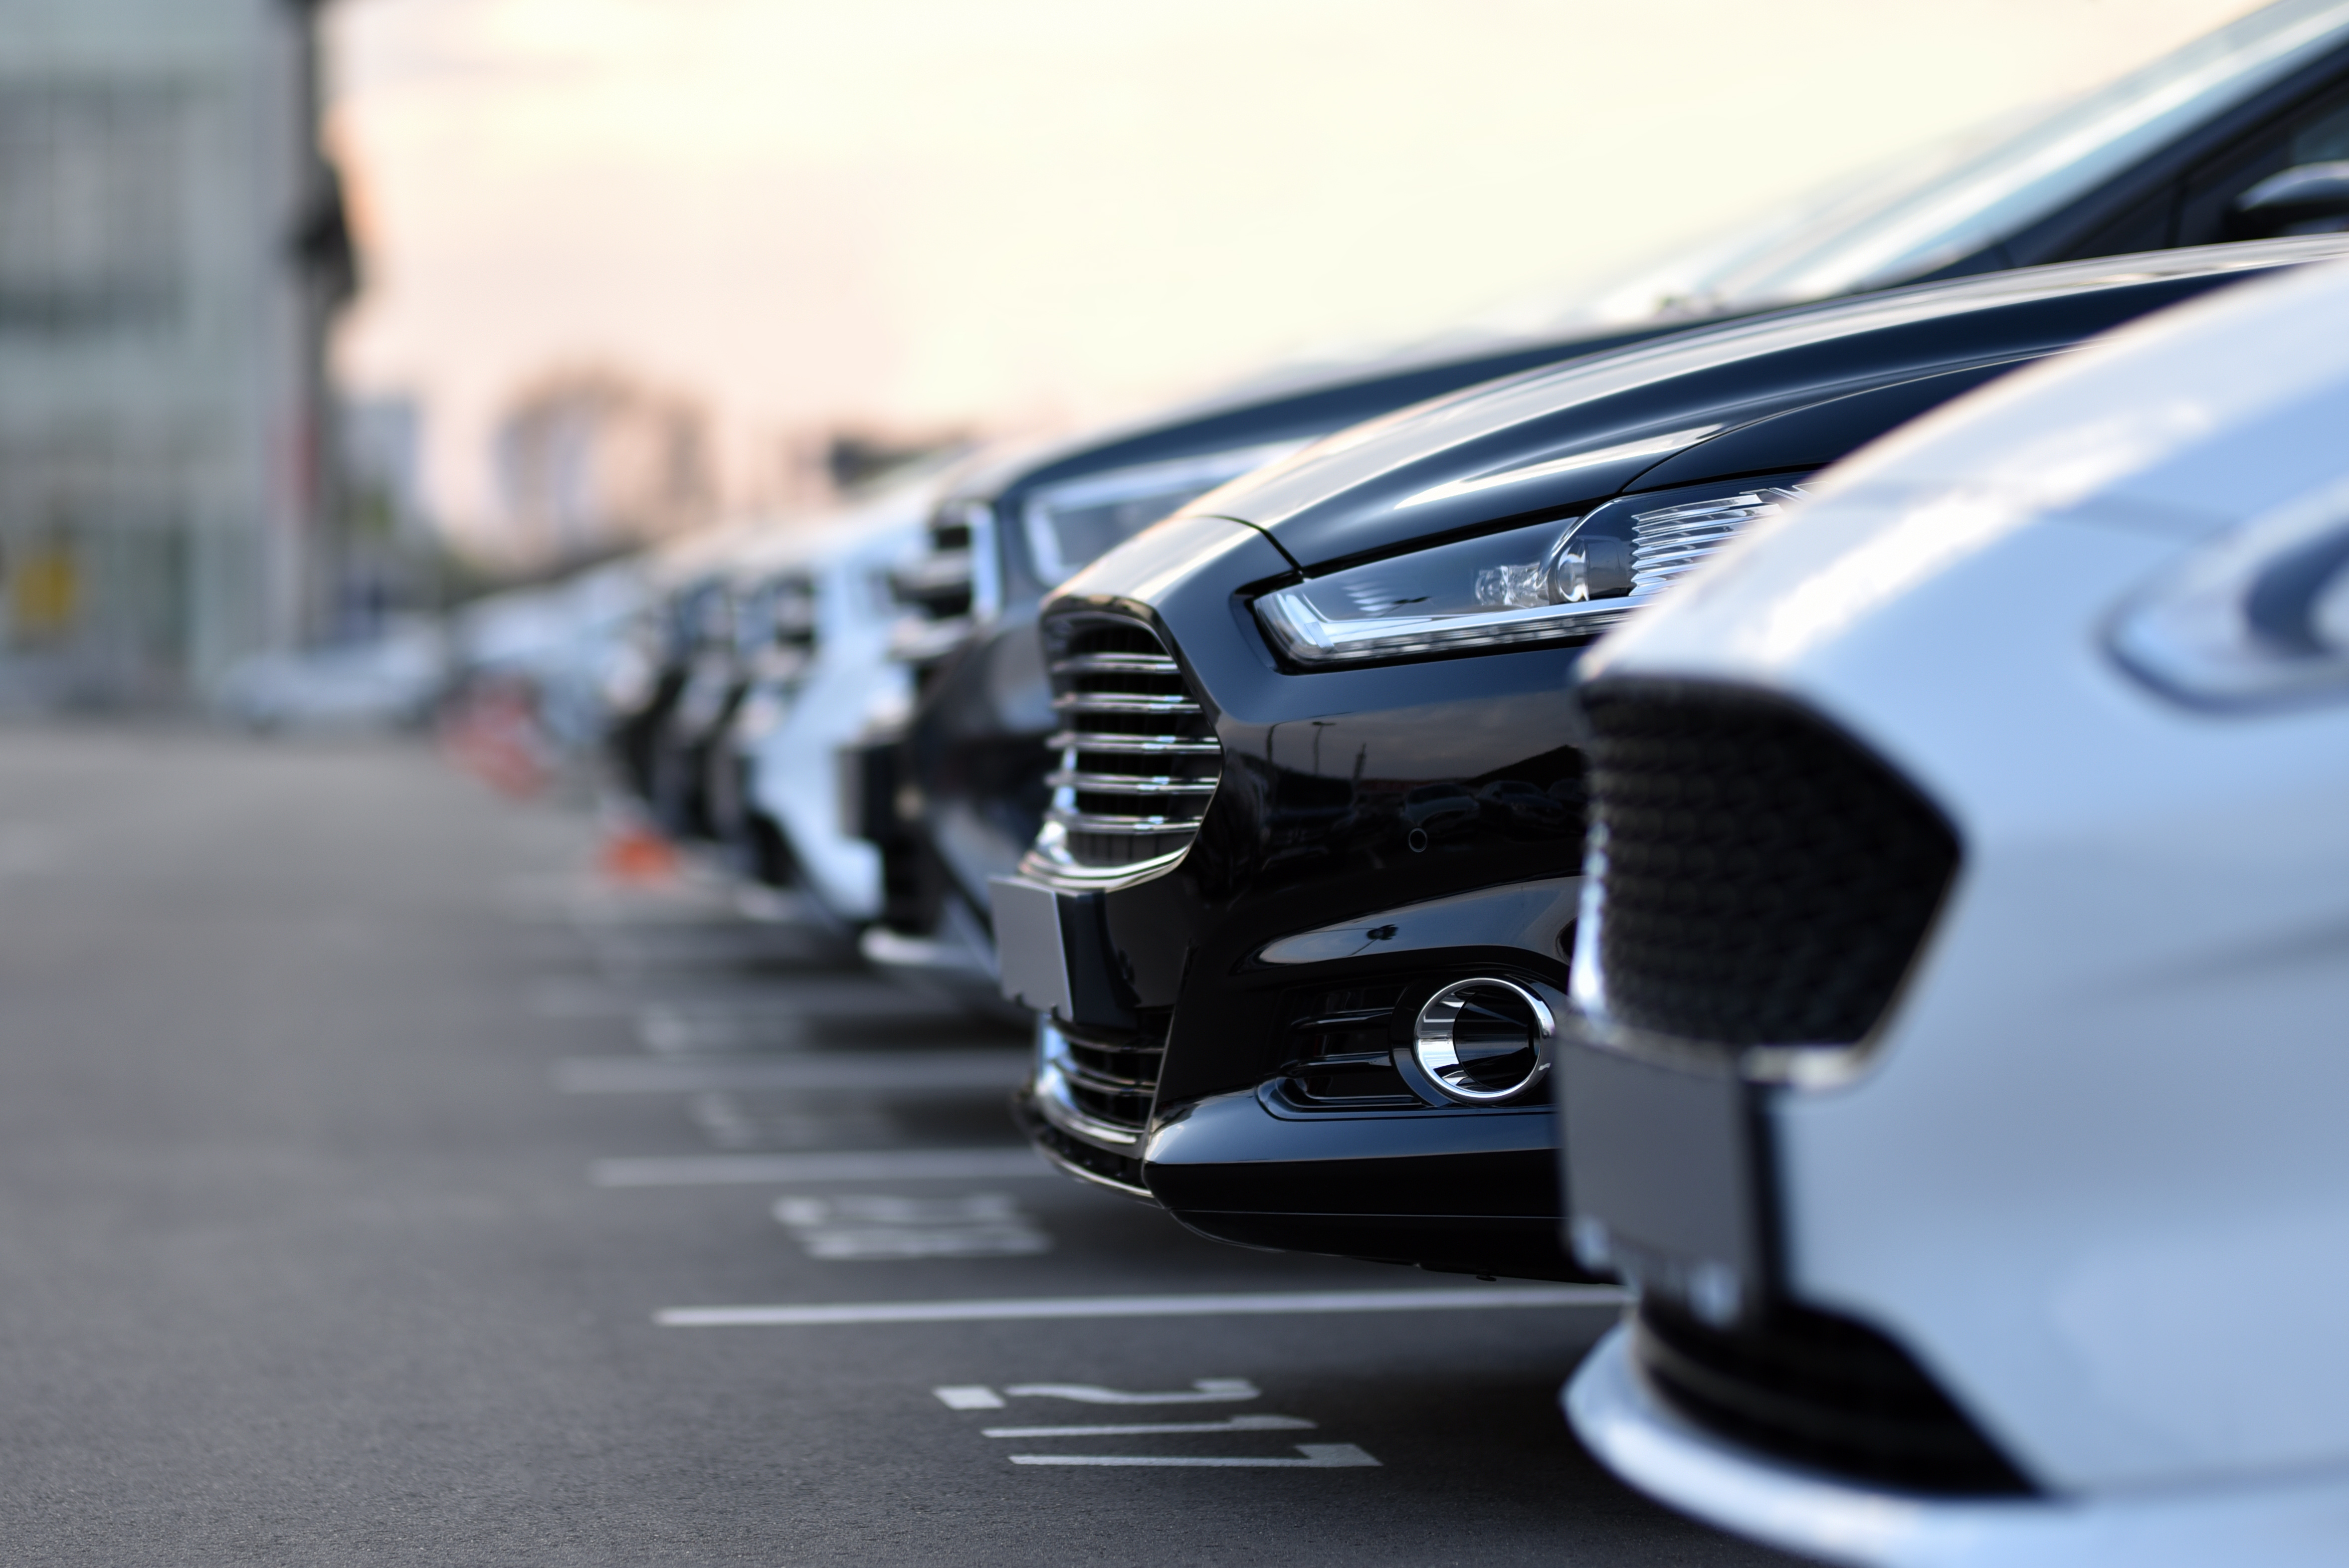 rijen zwarte en witte auto's op een parkeerplaats die wachten op verkoop.